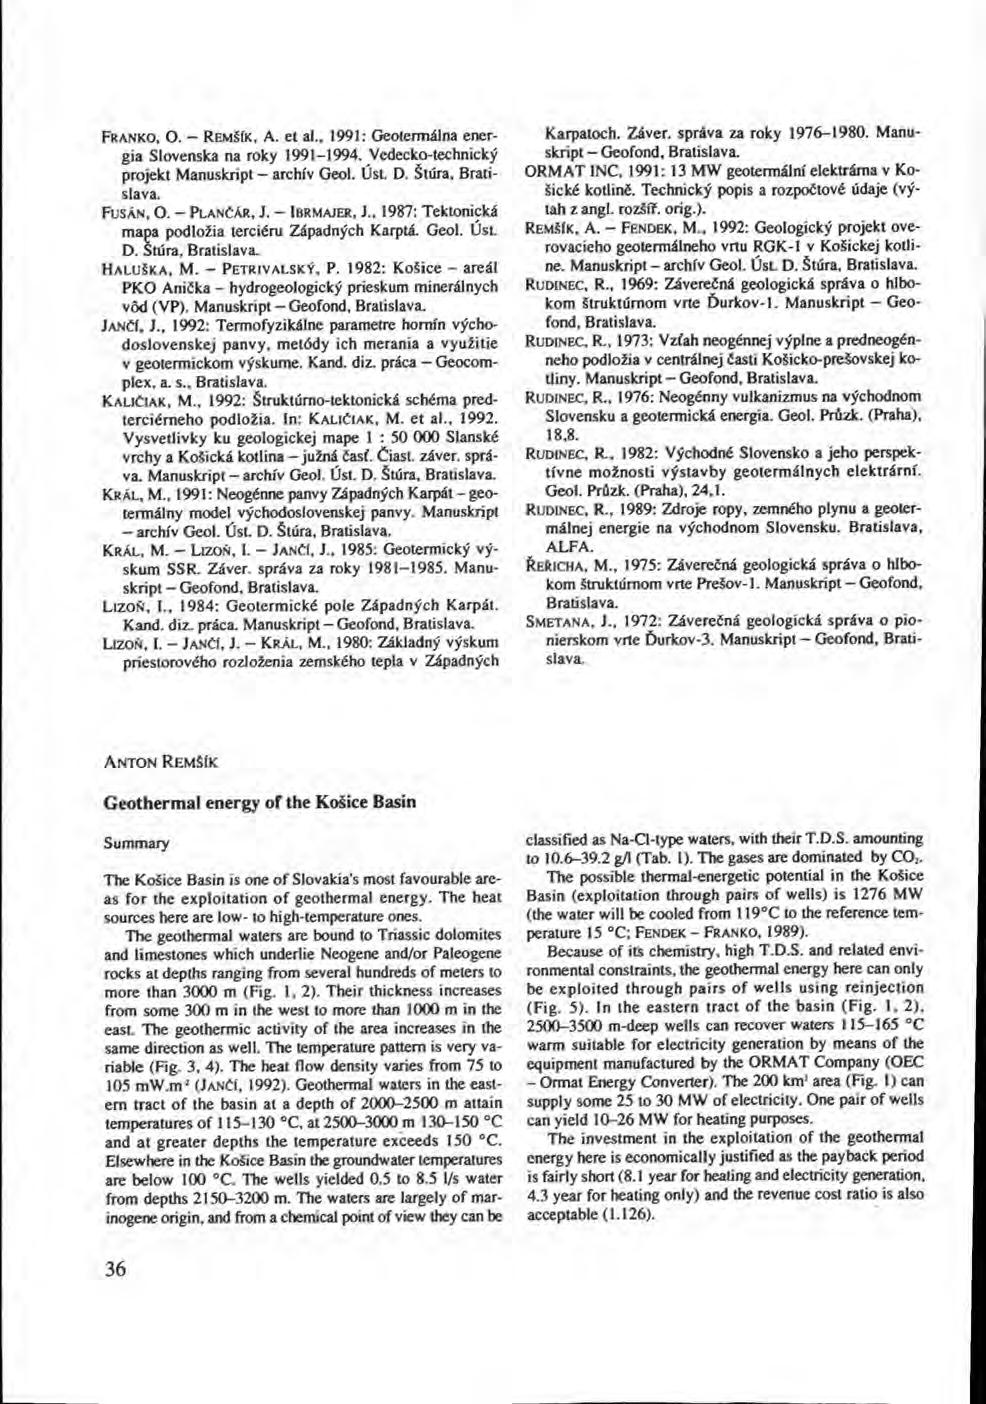 FRANKO, O. - REMŠIK, A. et al., 1991: Geotermálna energia Slovenska na roky 1991-1994. Vedecko-technický projekt Manuskript - archív Geol. Úst. D. Štúra, Bratislava. FUSÁN, O. - PLANČÁR, J.